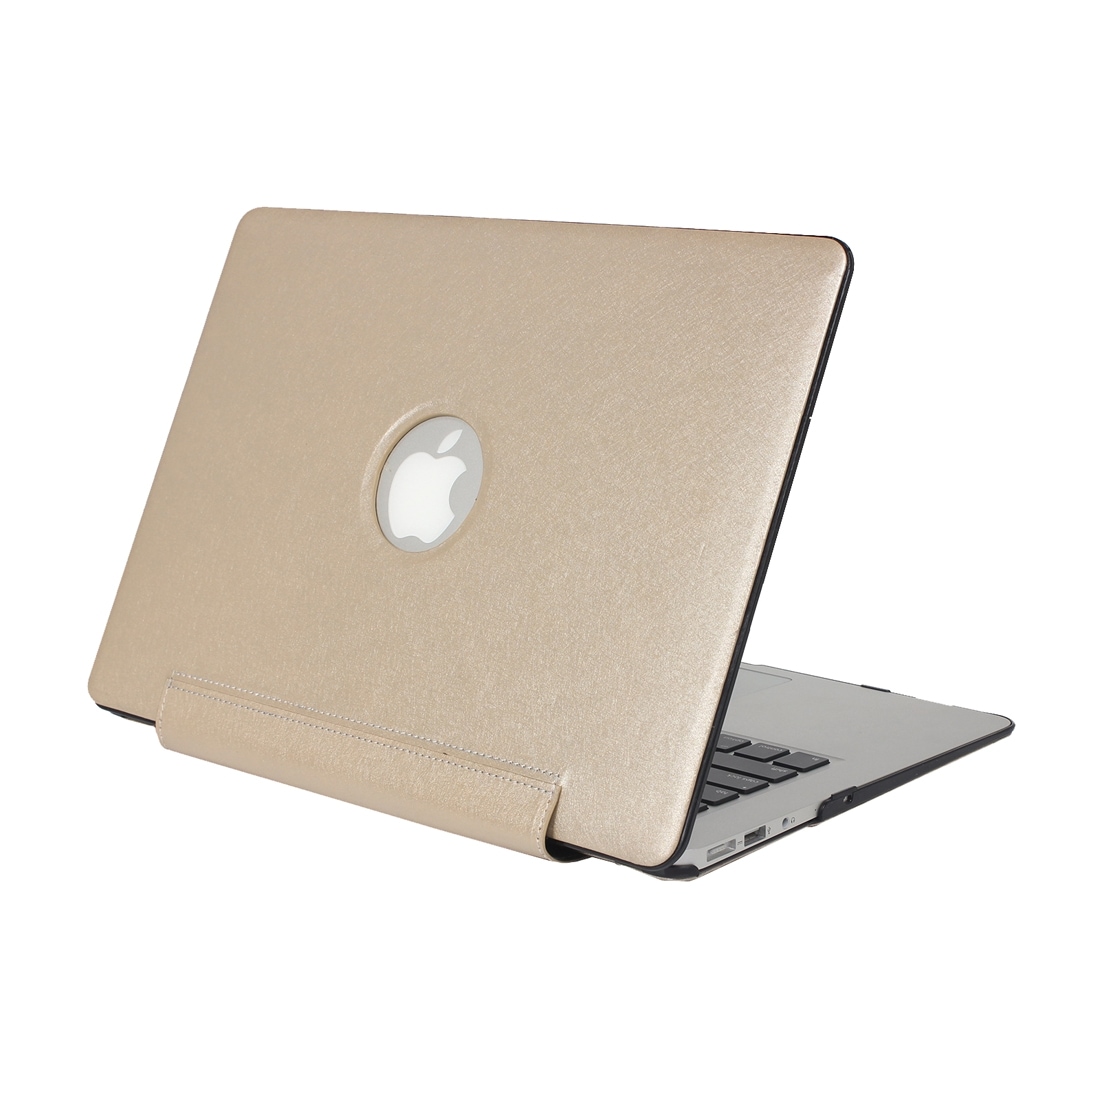 Gull futteral Macbook Pro Retina 13.3"